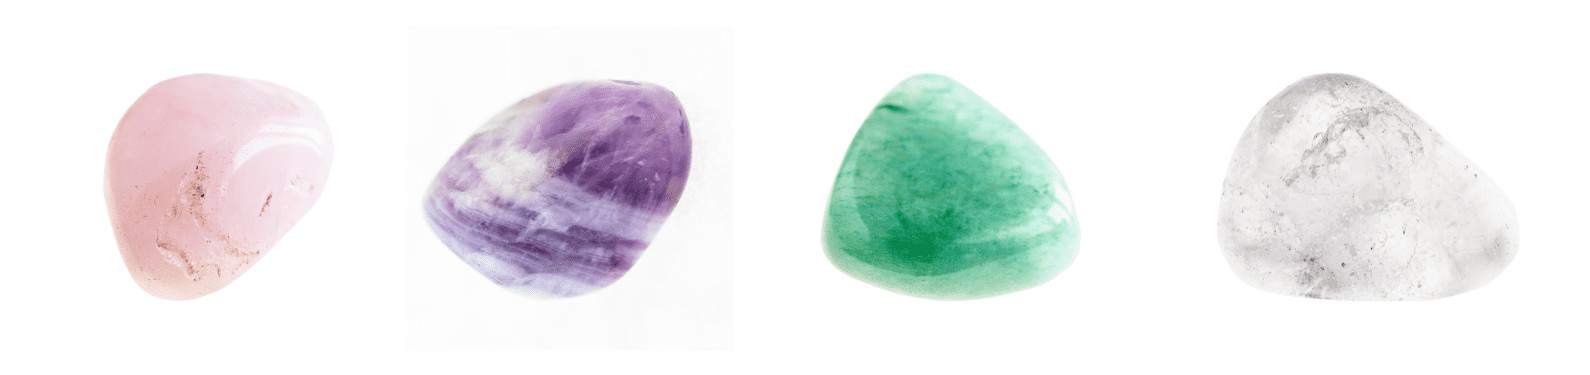 pierres précieuses pour bébé : quartz rose - améthyste - aventurine verte - cristal de quartz